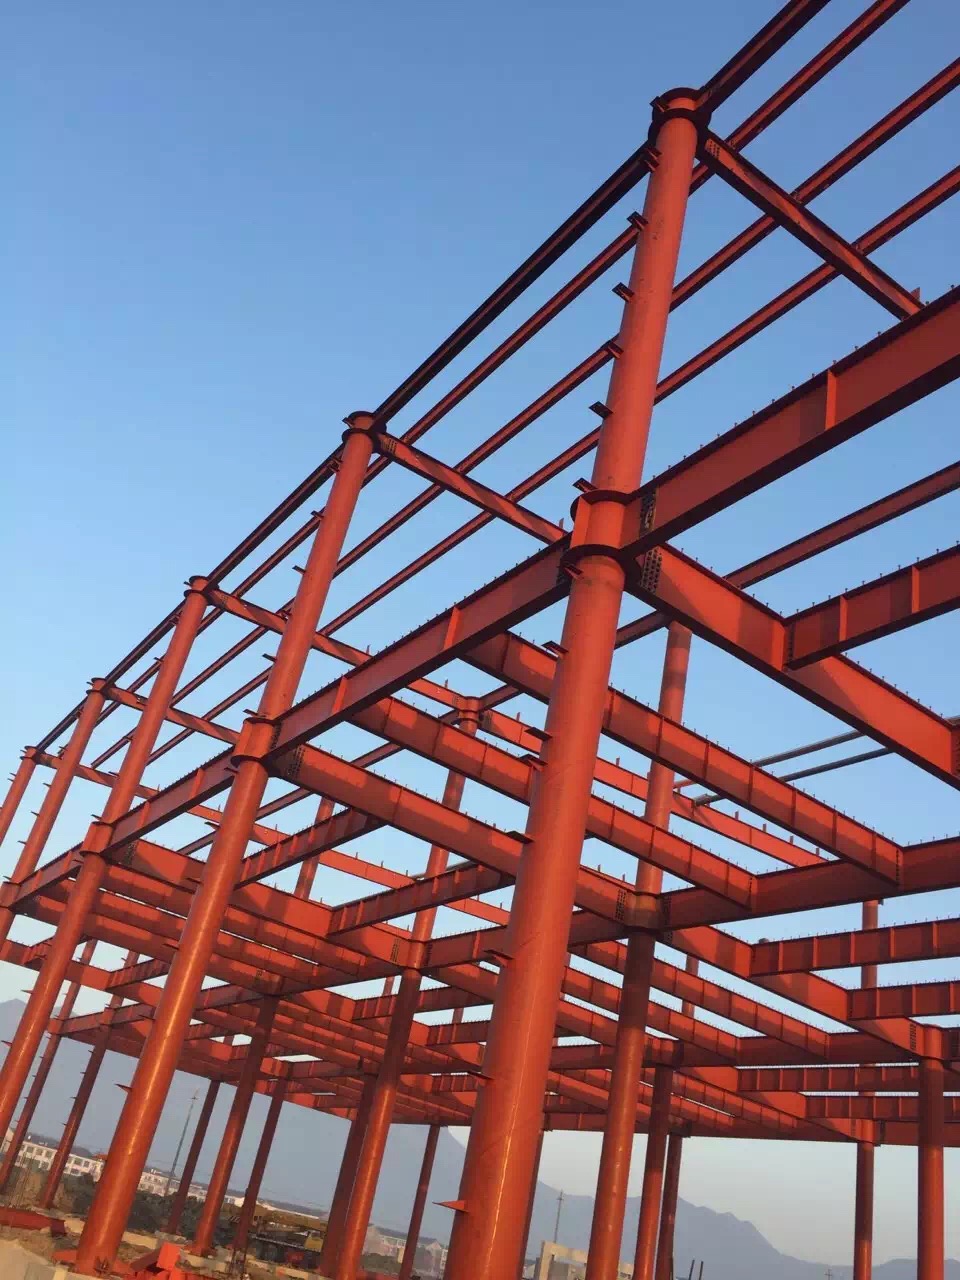 武汉市钢结构厂家   钢架结构公司哪家好   大小型钢结构厂房图片    钢结构生产商图片